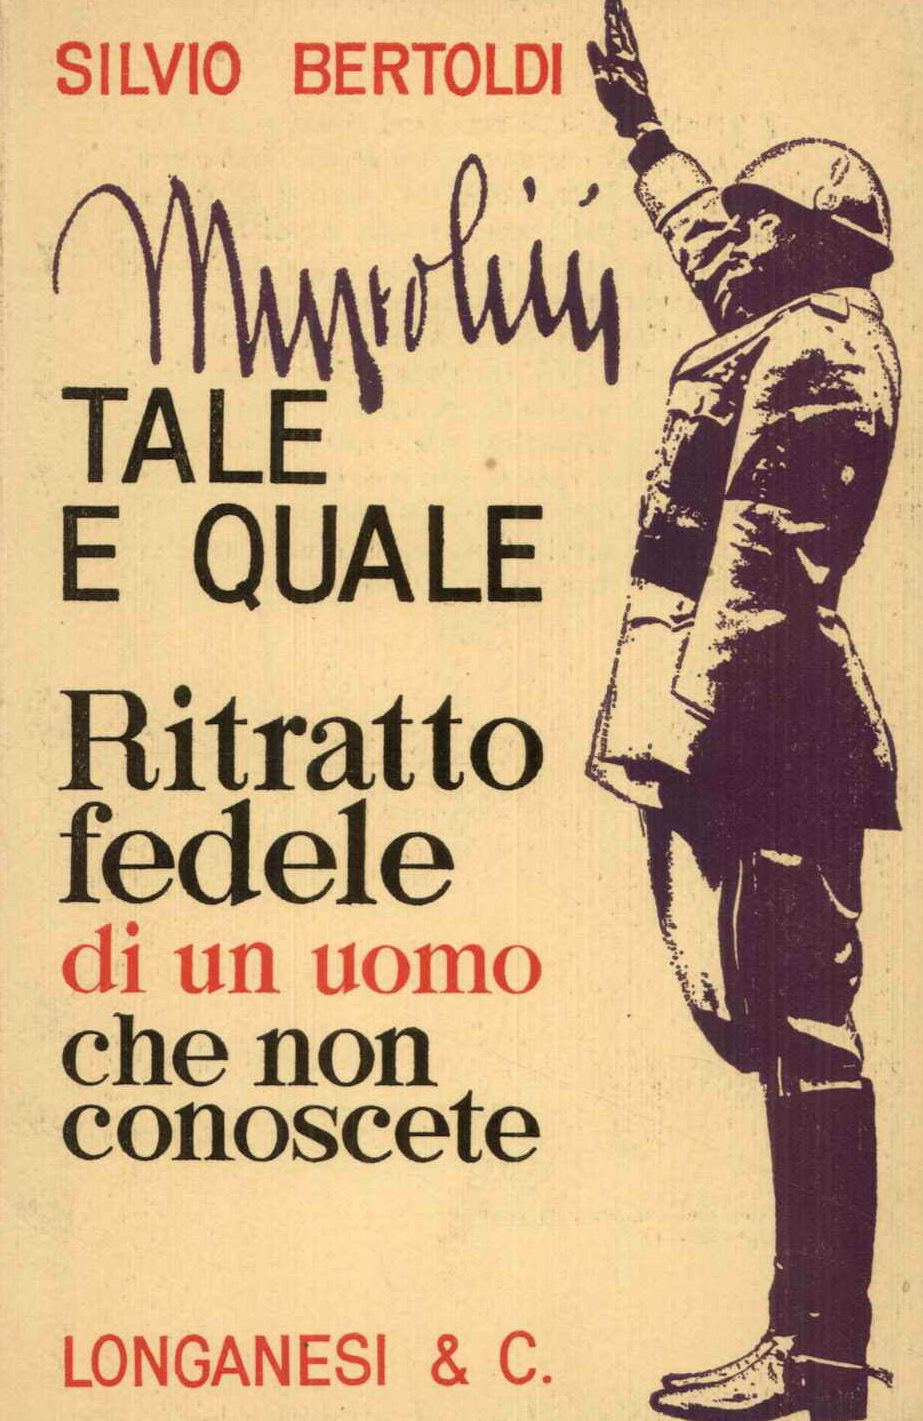 Mussolini Tale e quale (Ritratto fedele di un uomo che non conoscete)